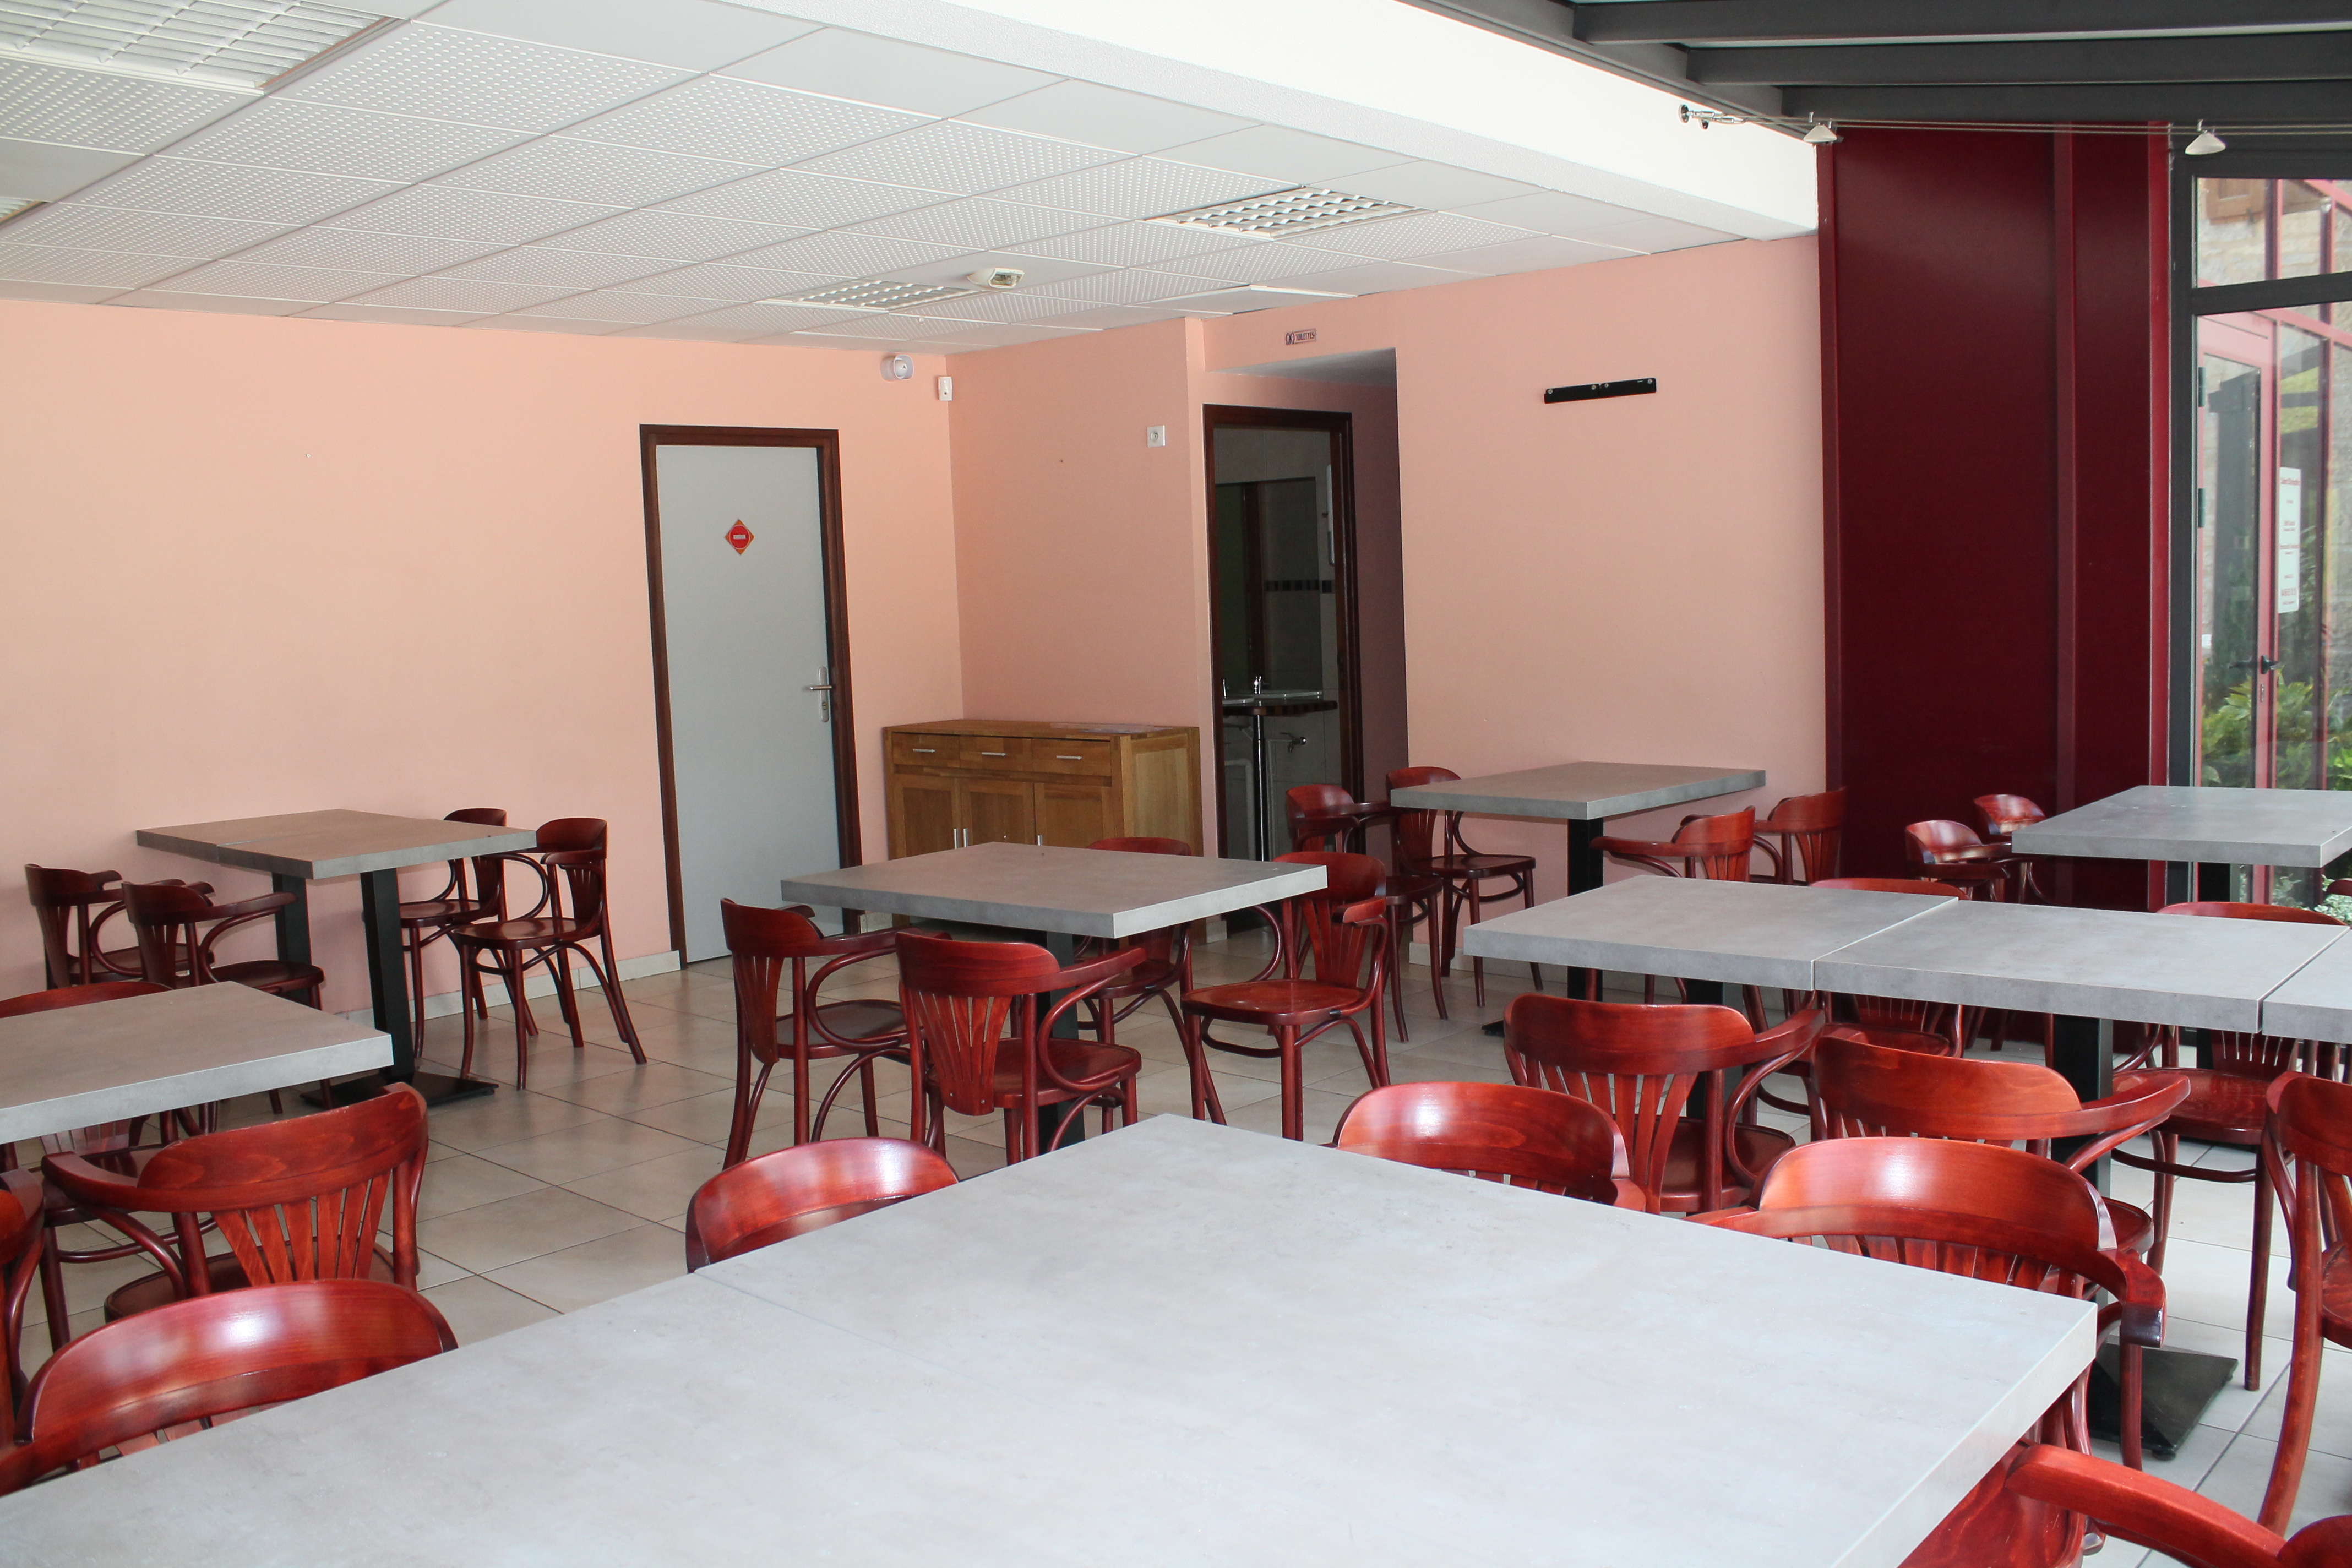 A reprendre, multiservices : bar - restaurant - alimentation communal situé à l’Ouest du département de la Lozère, proche de l’A75 reliant Clermont-Ferrand à Béziers. La commune d’Esclanèdes (420 habitants) est située dans la vallée du Lot, sur la RN 88, à 15 min de Mende et de Marvejols, à la croisée de sites touristiques emblématiques du département.

Construit par la commune en 2009, le local d’activité (180 m²) est composé d’un premier volume comprenant une salle de bar-restaurant avec anciennement une surface de vente pour une alimentation générale (environ 60 m²). Un second espace est composé d’une cuisine semi-équipée, d’une seconde salle de restaurant, un dégagement avec sanitaires, deux réserves et une chambre froide. Une grande terrasse est exploitable sur la place du village. L’établissement peut accueillir 40 couverts en intérieur et jusqu’à 30 couverts en extérieur.

Idéal pour un couple ou deux associés. Le preneur devra disposer d’une première expérience en restauration.

Loyer mensuel : 800 € HT

Licence IV : 120 €/an

Droit de terrasse : 150 €/an

Date limite de dépôt des candidatures : 30 novembre 2023